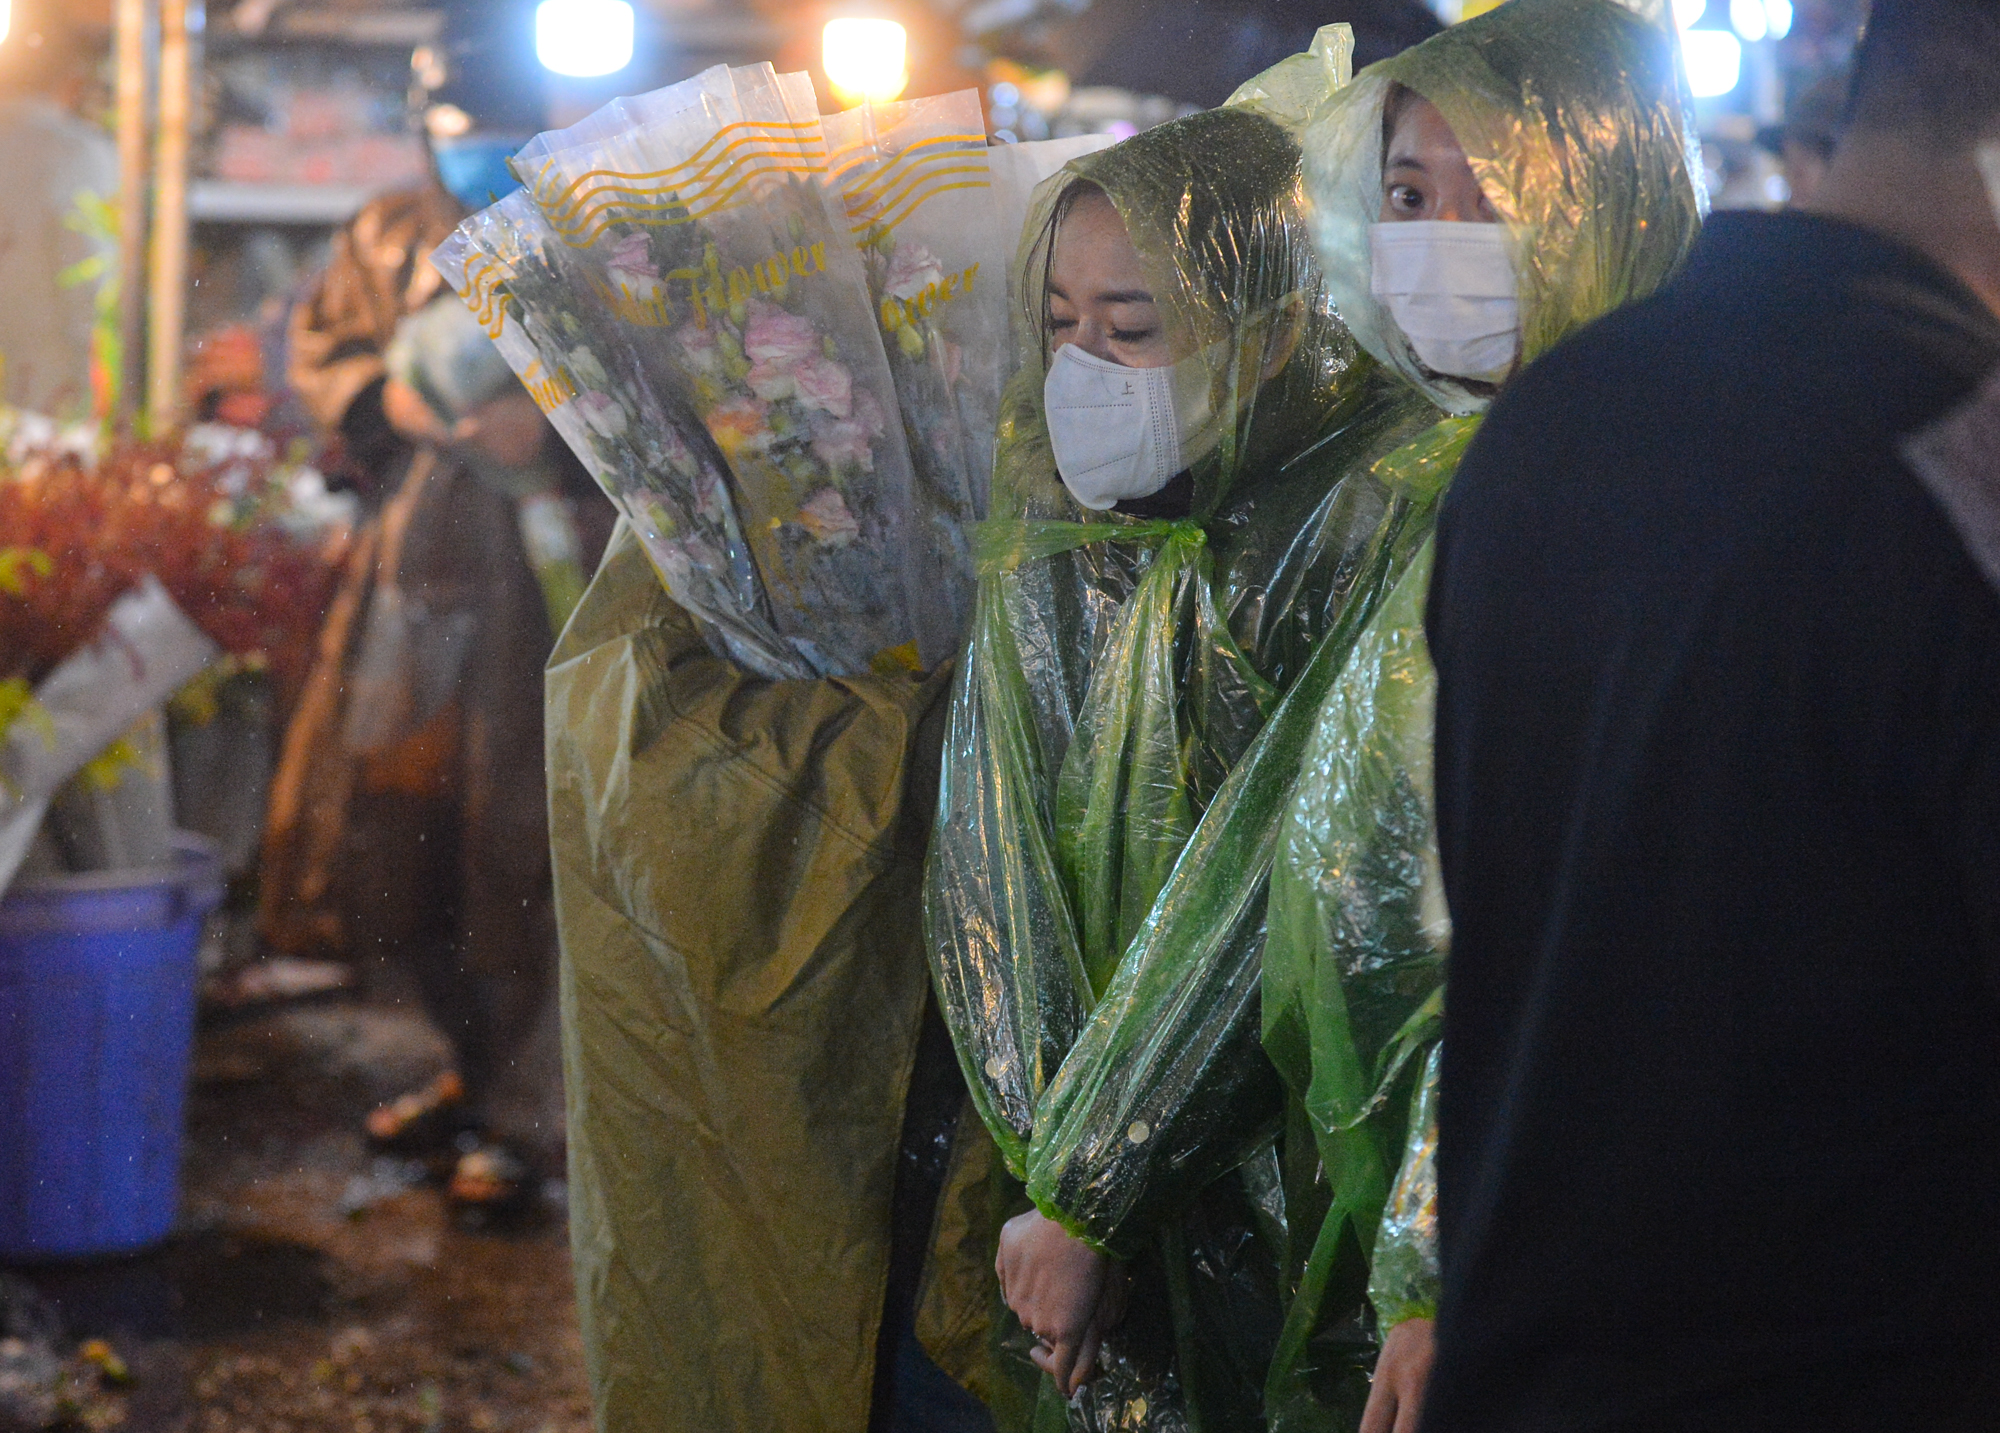 Ảnh: Mặc áo mưa, đội ô đi chợ hoa đêm lớn nhất miền Bắc trước ngày Phụ nữ Việt Nam 20/10, nhiều người co ro vì lạnh - Ảnh 15.